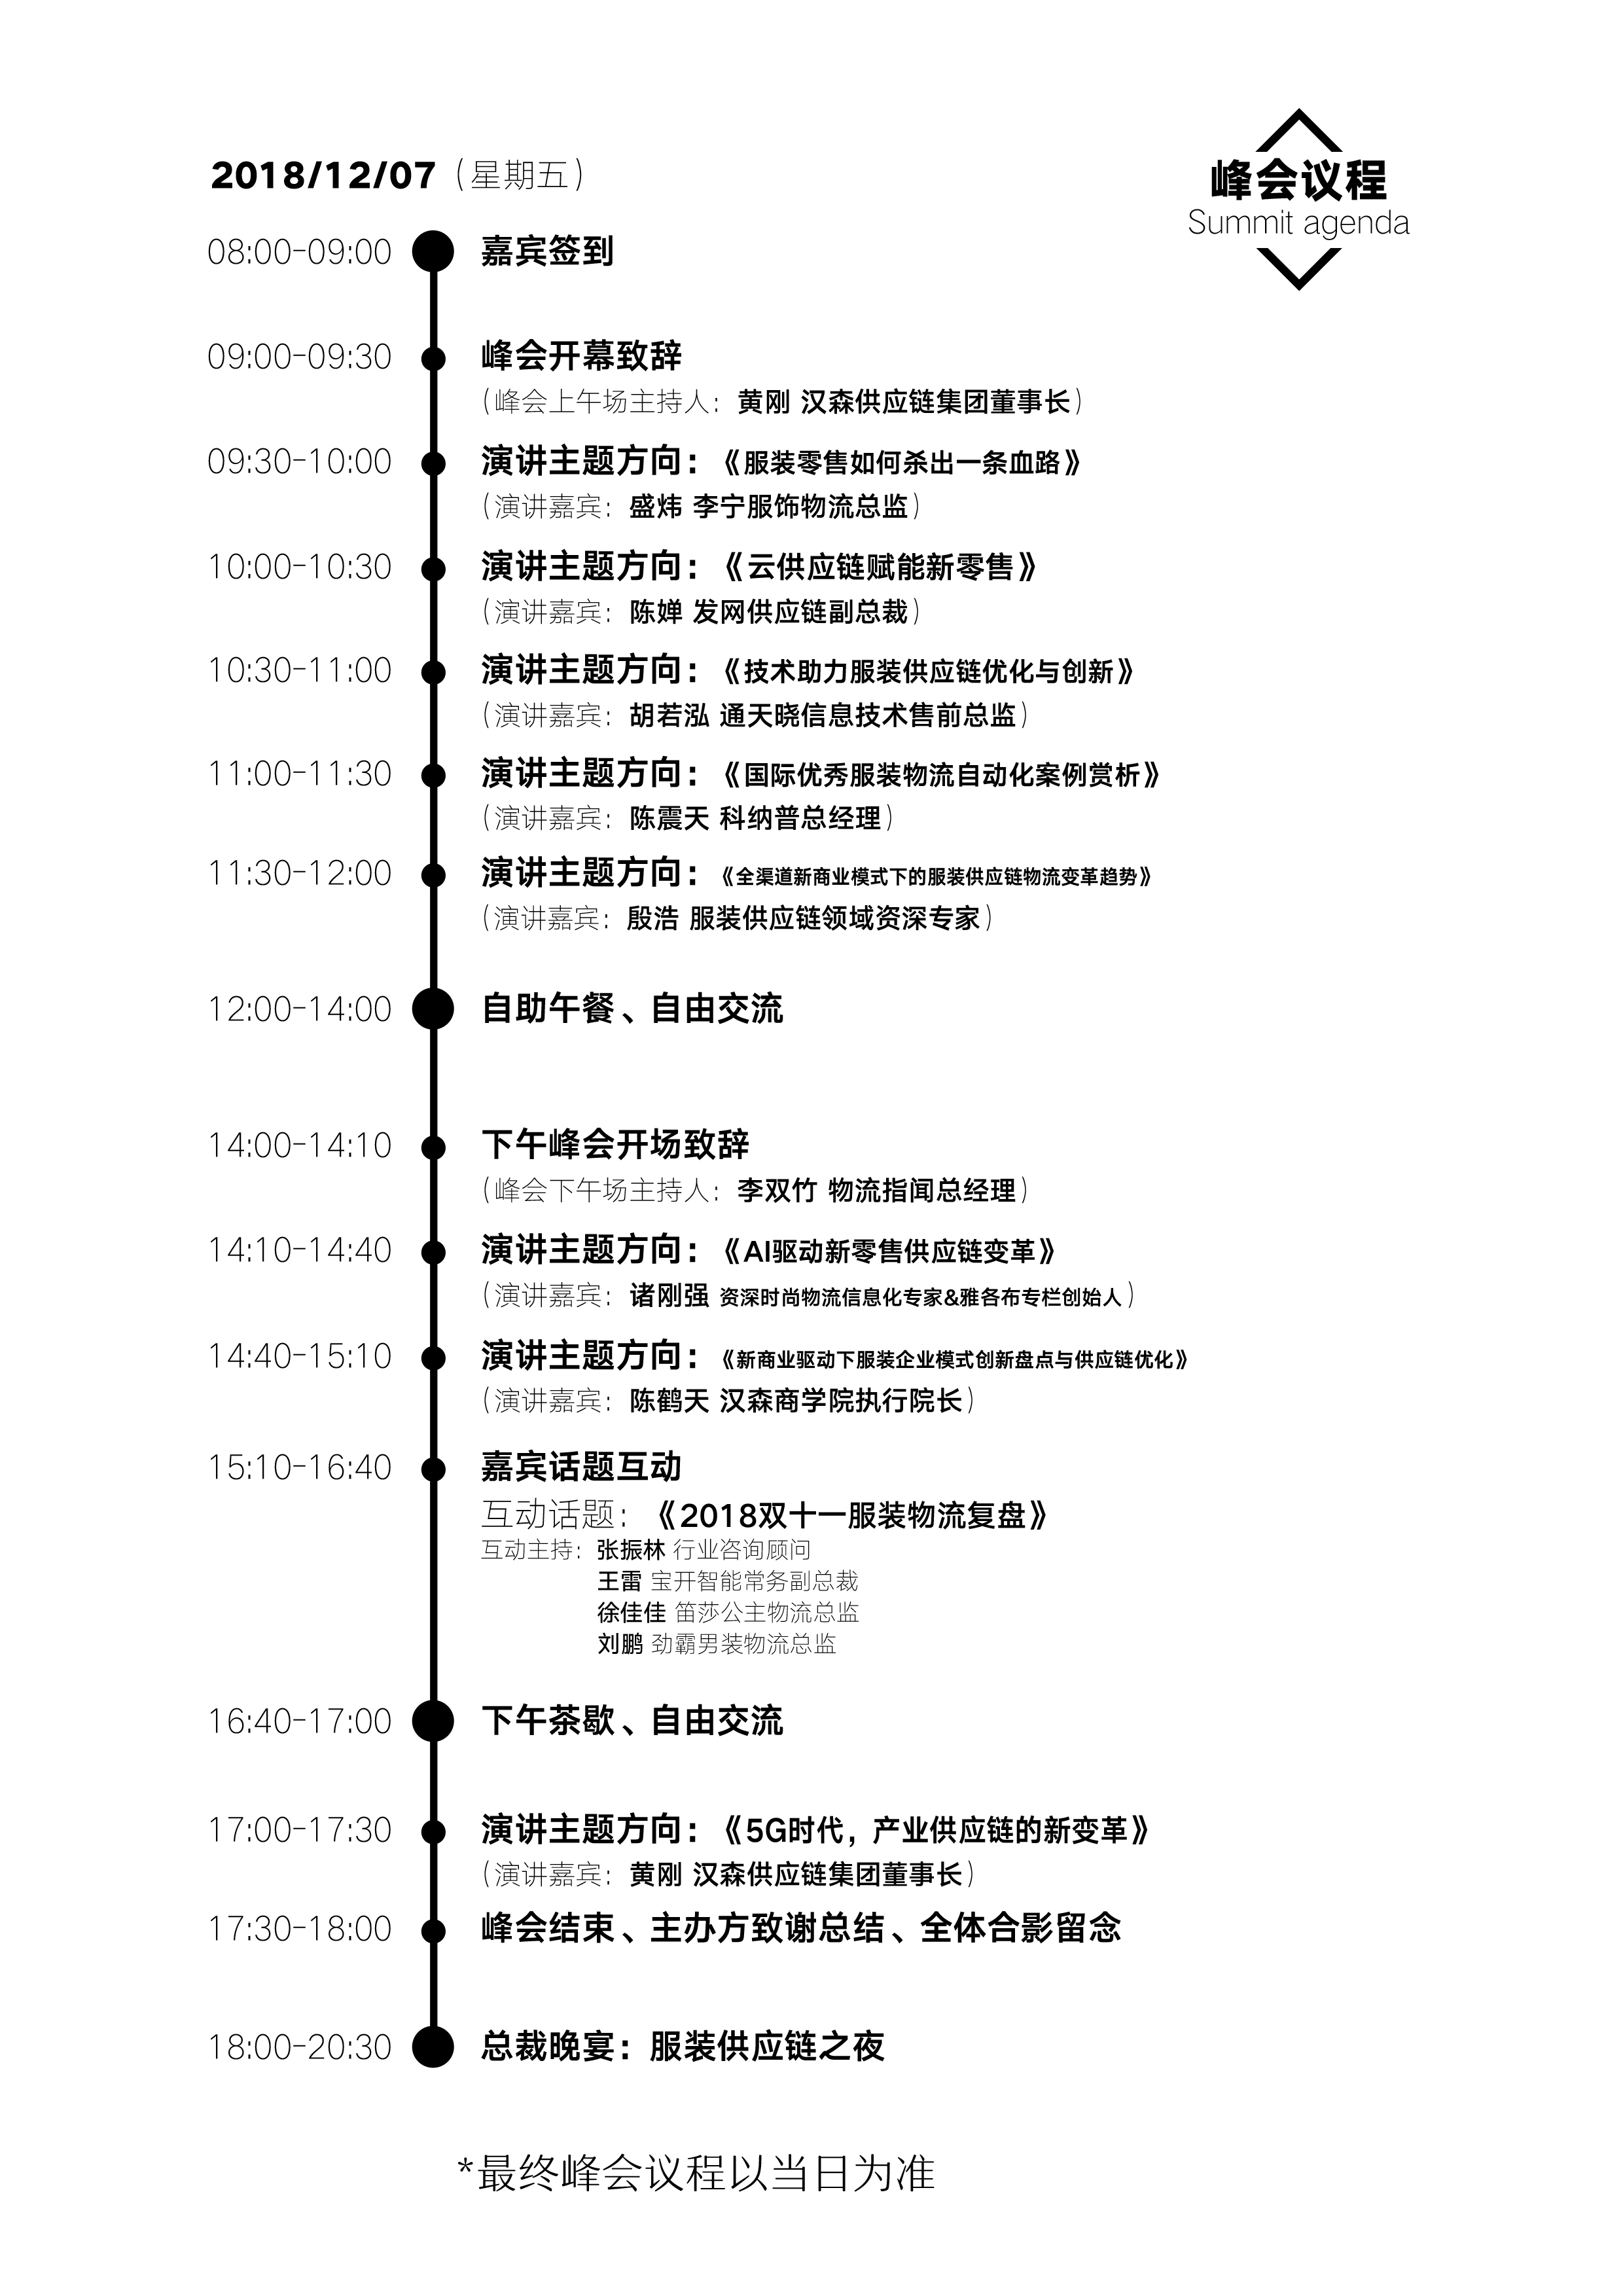 01-联盟-第五届中国服装供应链创新峰会-议程-A4(1).jpg